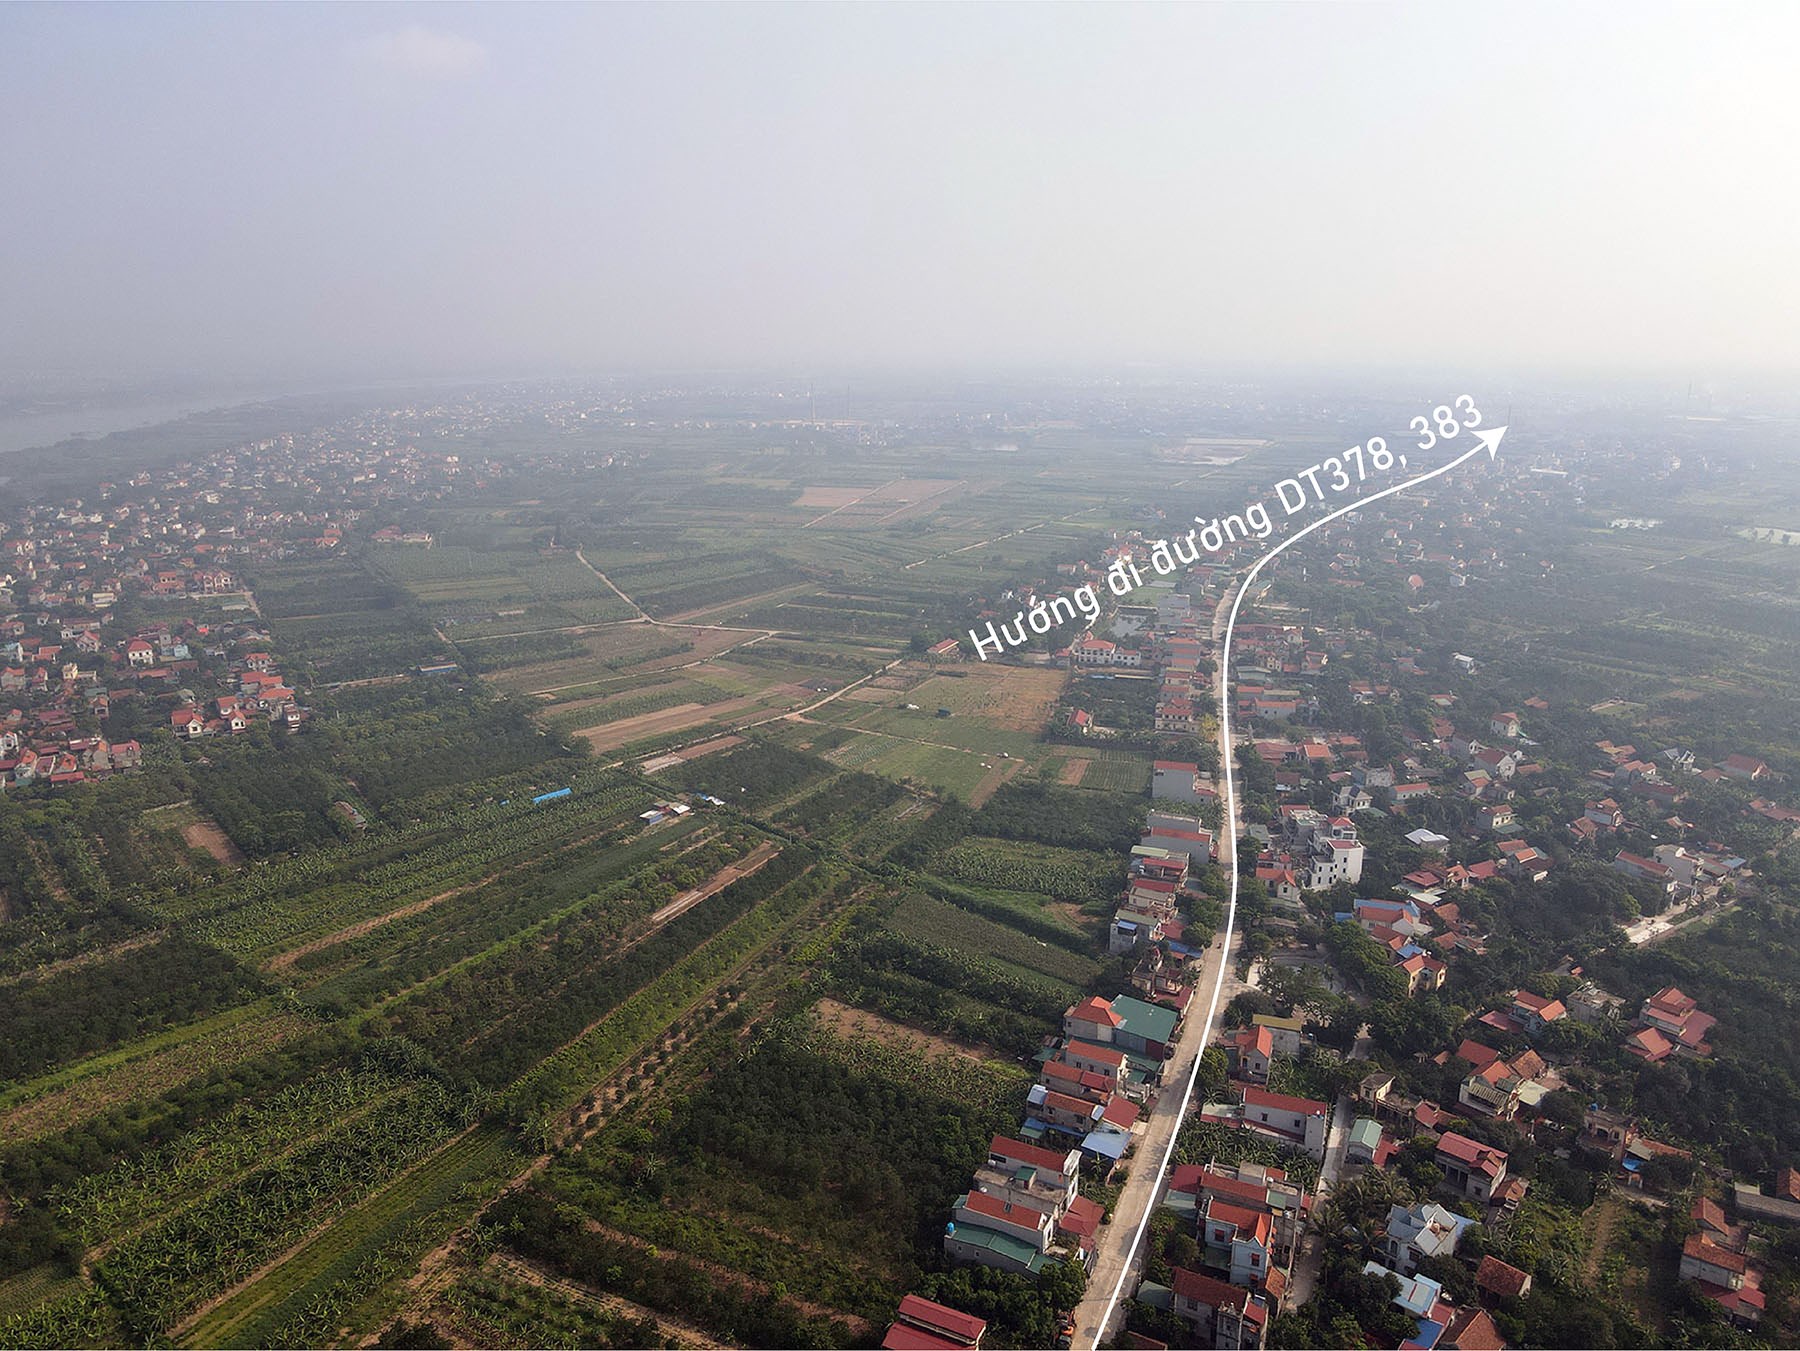 Toàn cảnh vị trí dự kiến xây cầu Đông Ninh vượt sông Hồng nối Hưng Yên - Hà Nội